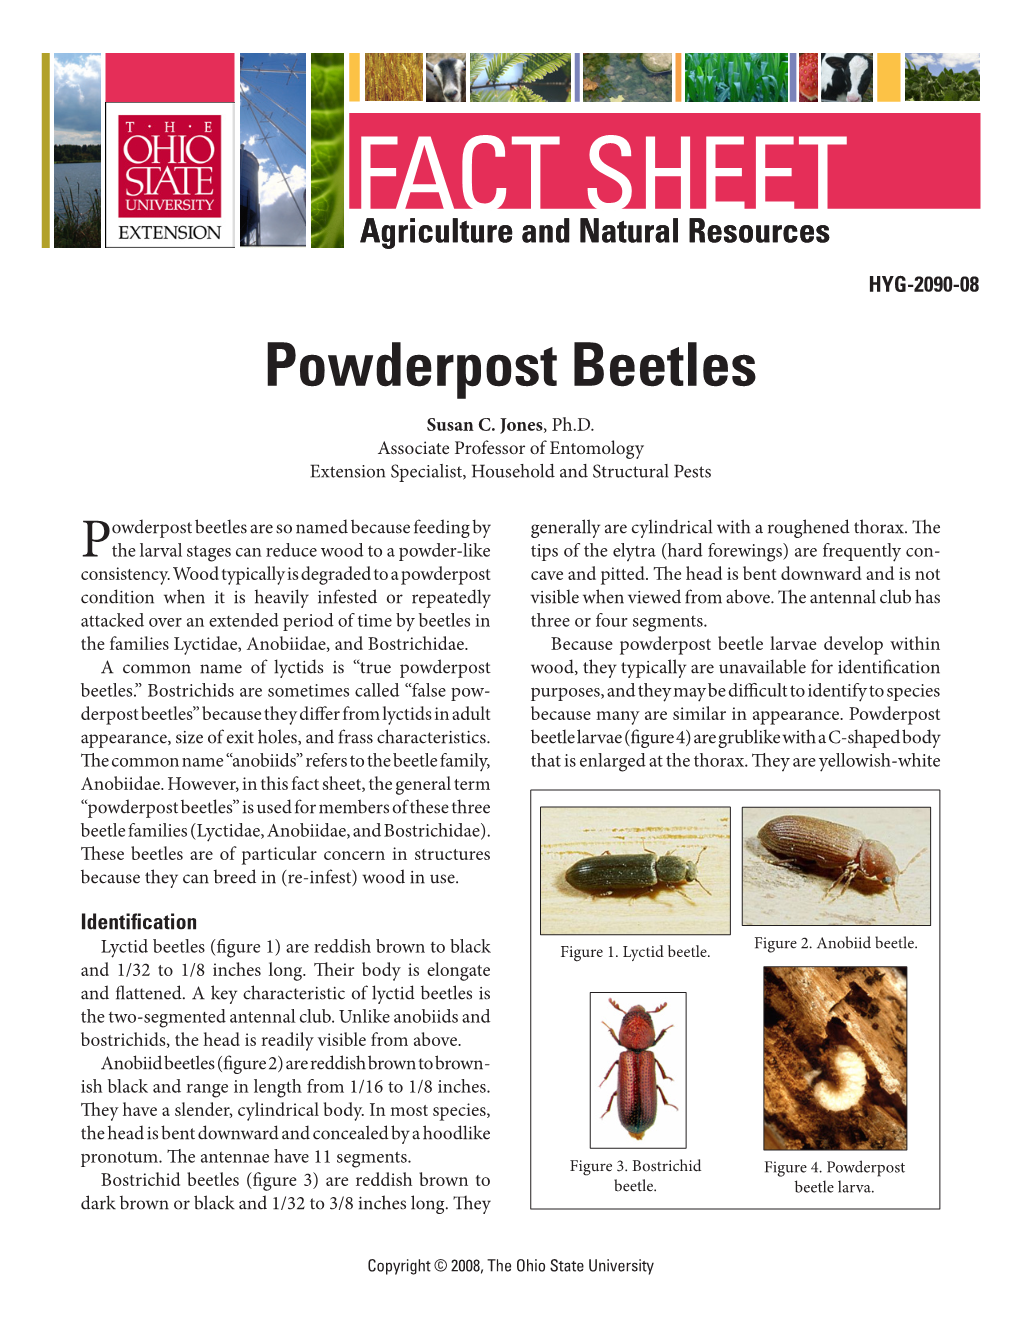 Powderpost Beetles